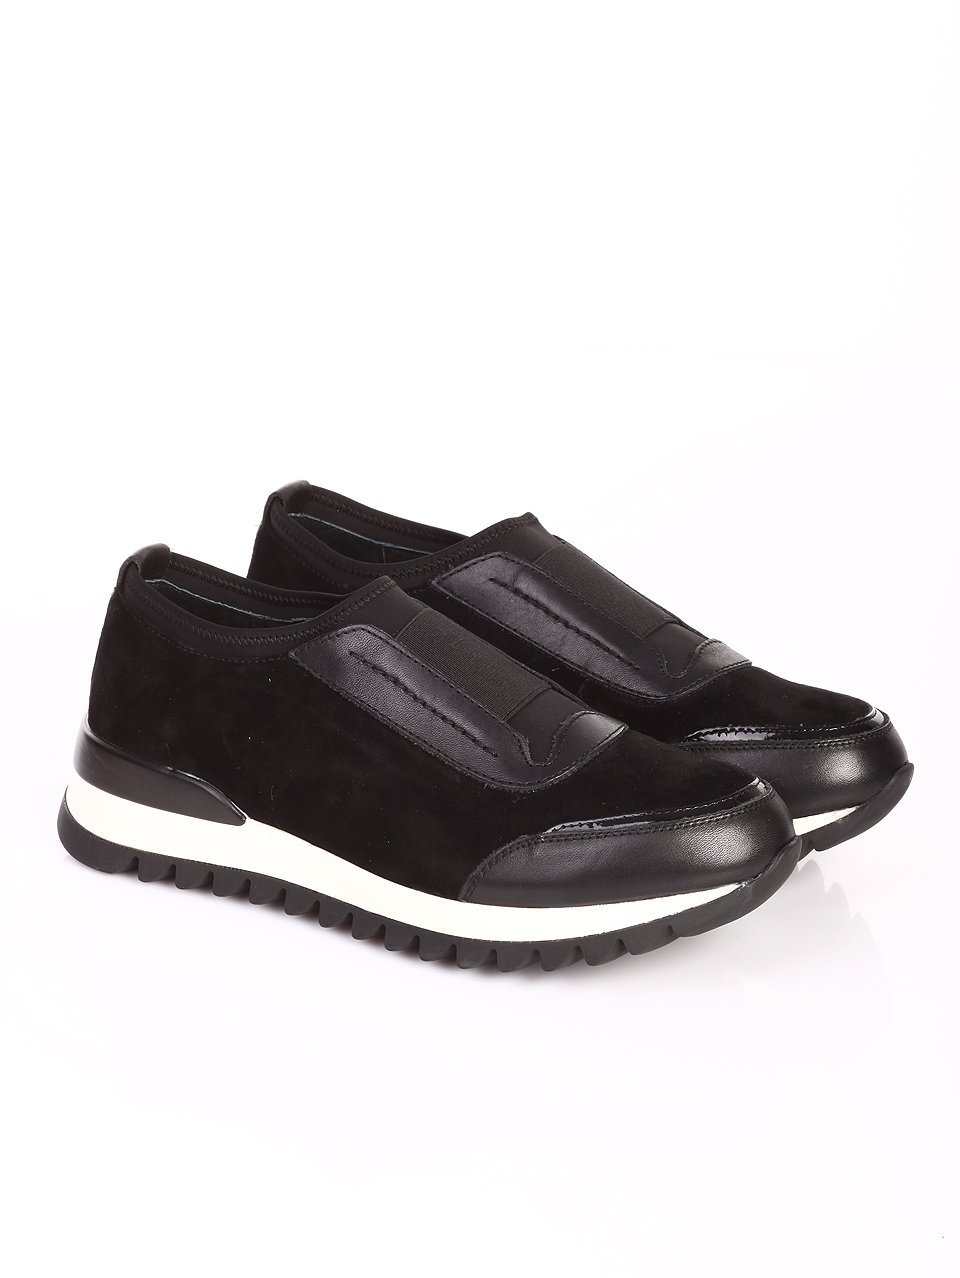 Ежедневни дамски обувки от естествен велур 3I-16453 black leather